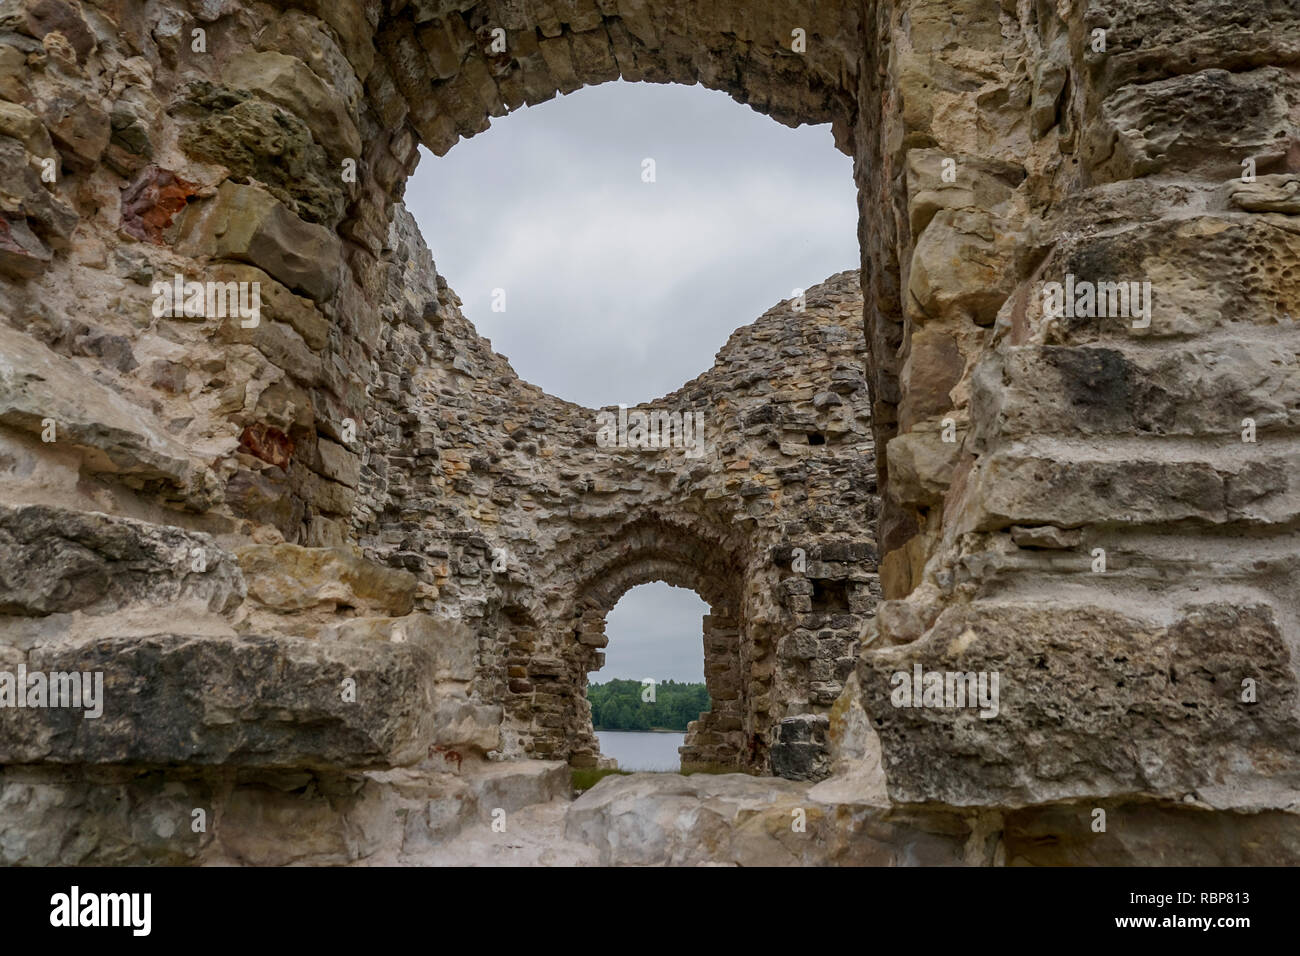 Koknese rovine del castello. Il lettone castelli medievali. Monumento archeologico di importanza nazionale. Il castello medievale di Koknese era un castello in pietra buil Foto Stock